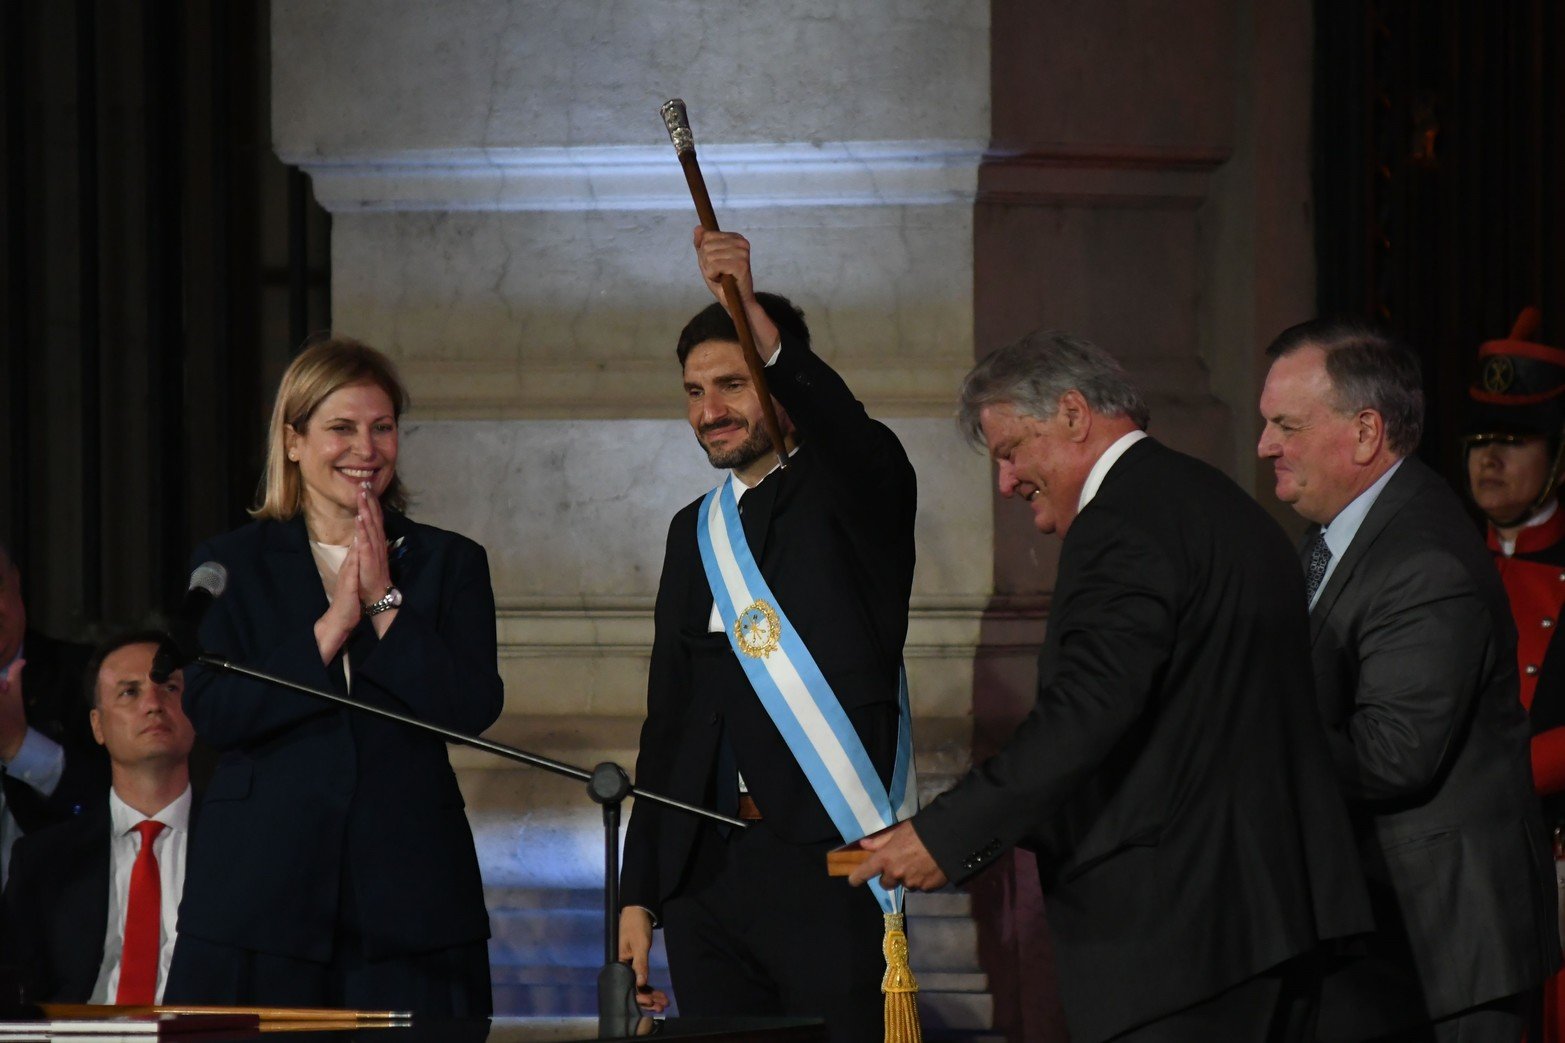 Con el bastón, saluda al público. Lo acompañan la Vice Gobernadora Gisela Scaglia, Carlos Fascendini y Felipe Michlig. Foto Pablo Aguirre